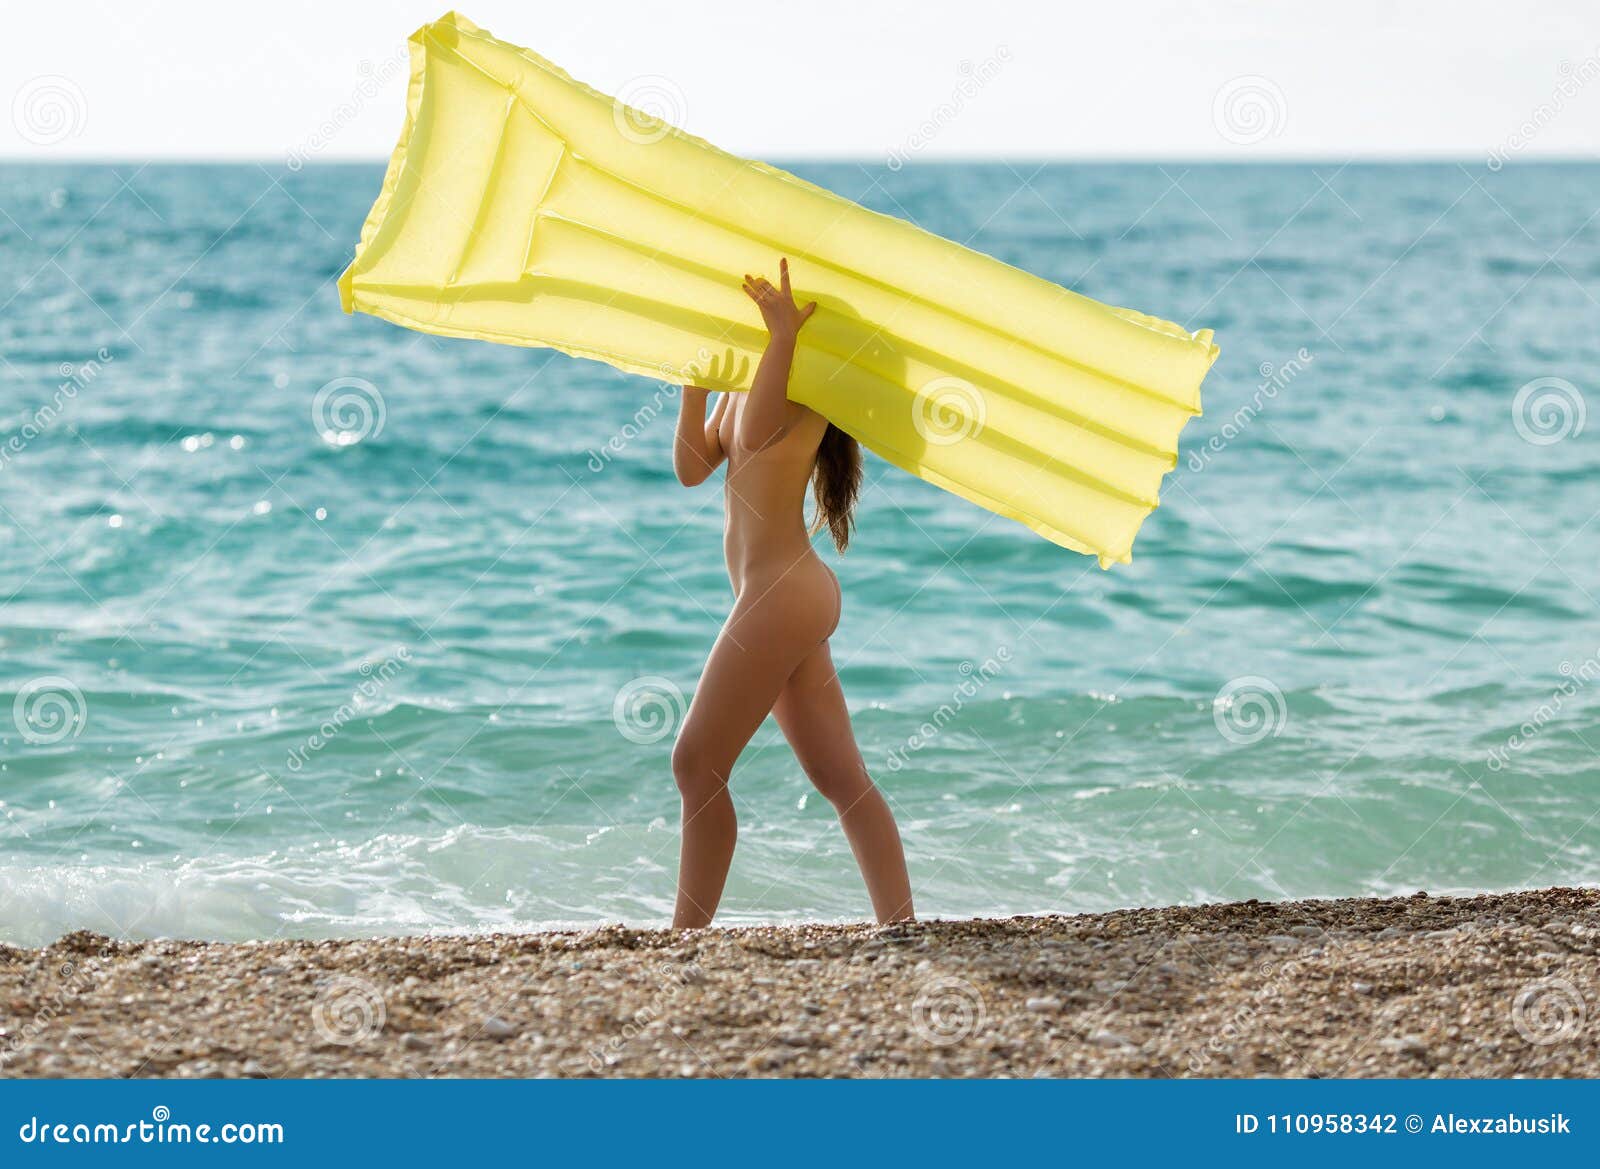 nude beach girls walking naked